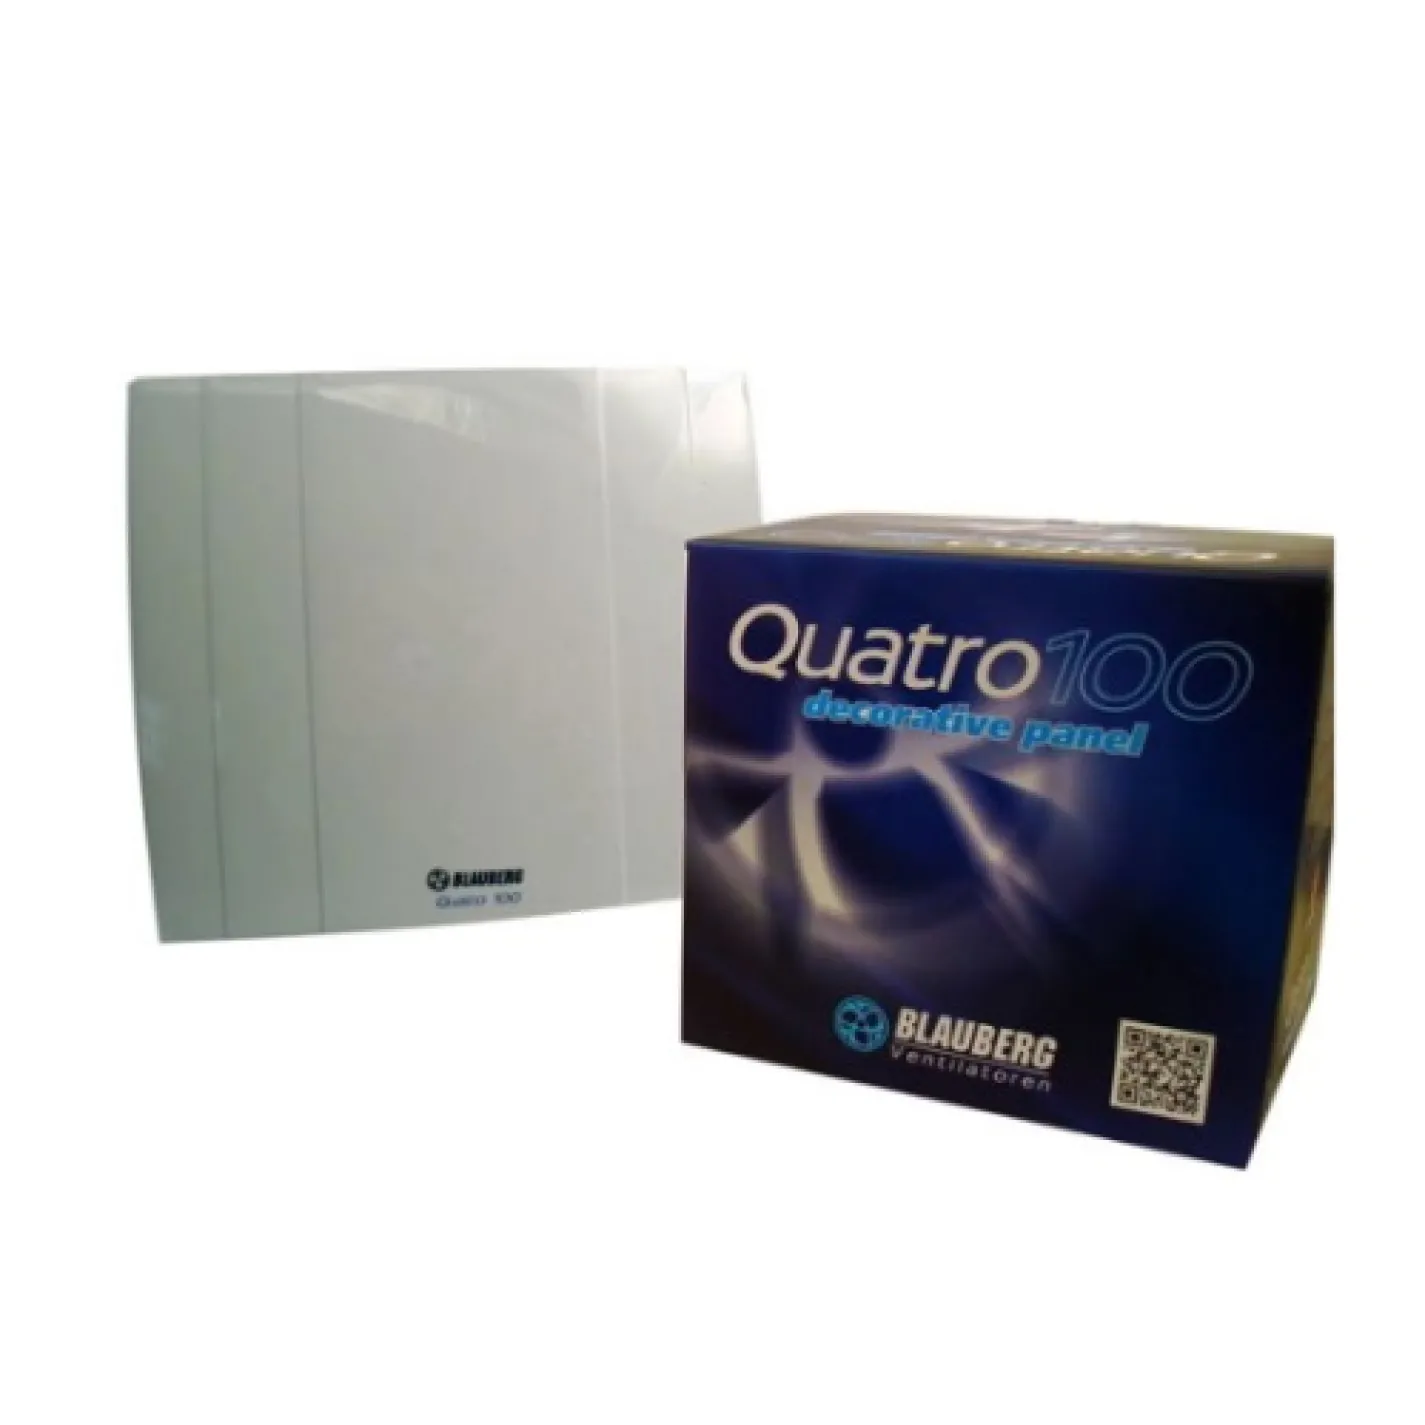 Вытяжной вентилятор Blauberg Quatro 100 - Фото 2